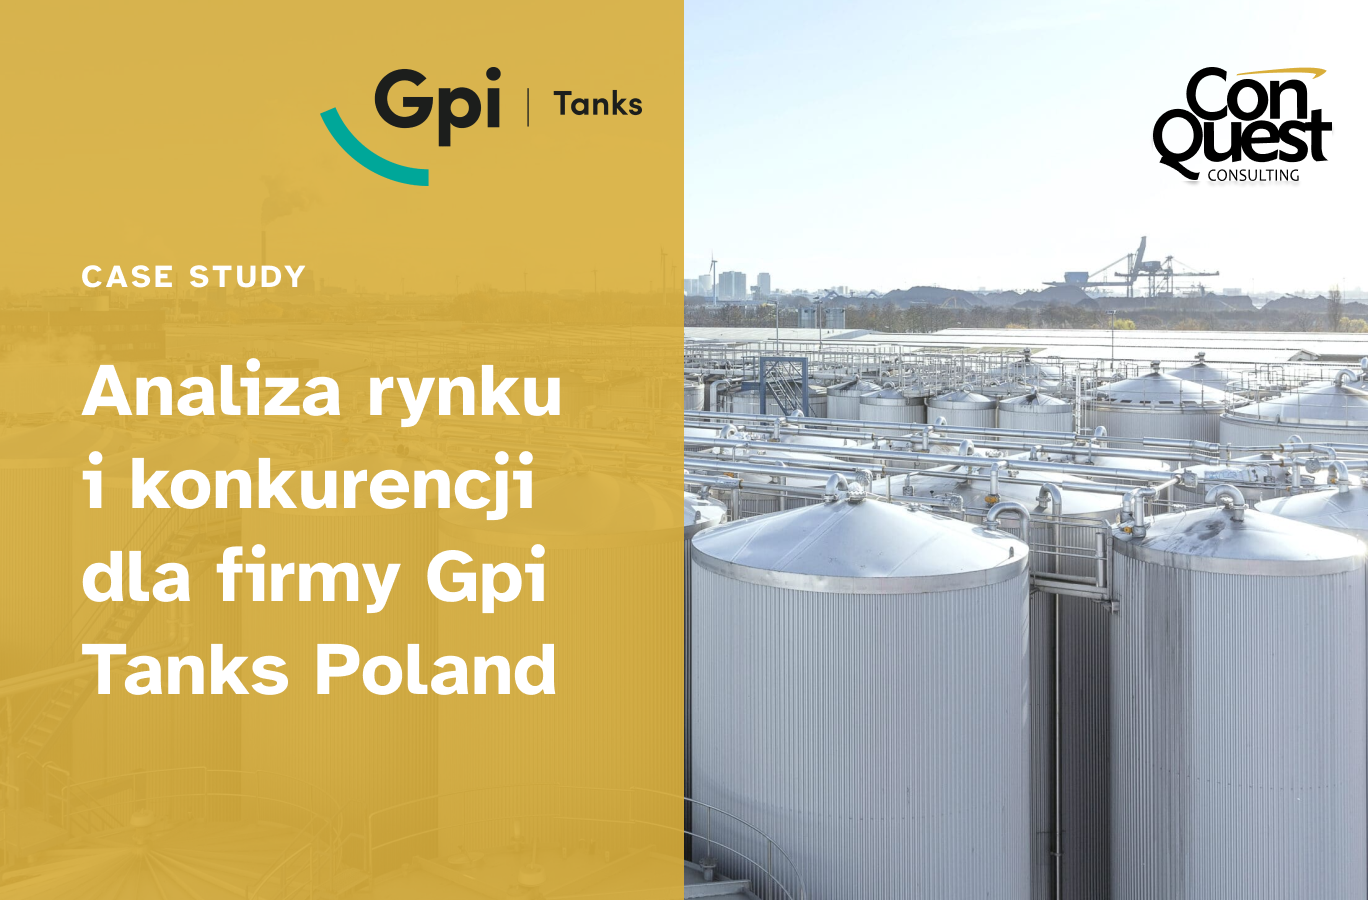 Analiza rynku i konkurencji dla firmy Gpi Tanks Poland